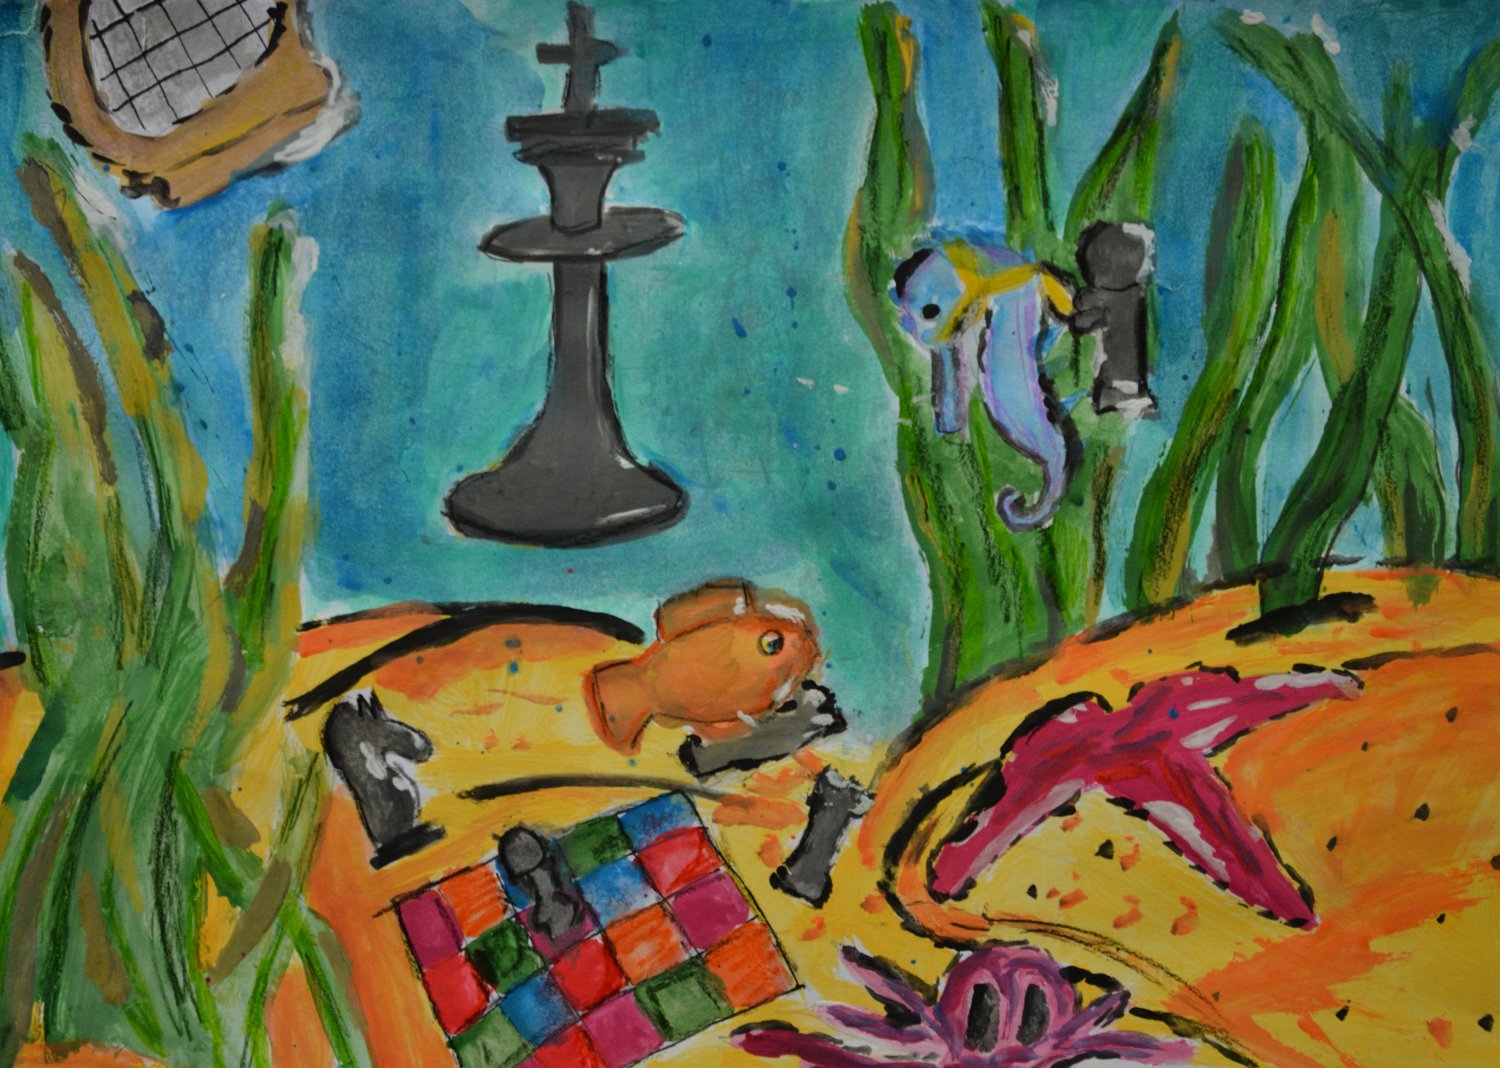 Wyróżnienie (klasy SP V-VIII). Alicja Zemanek Tytuł : “ Podwodny świat szachów”
Kolorowe przedstawienie gry szachowej umiejscowione w podwodnym świecie. Widać ryby, morskie rośliny, zaskakująca interpretacja.